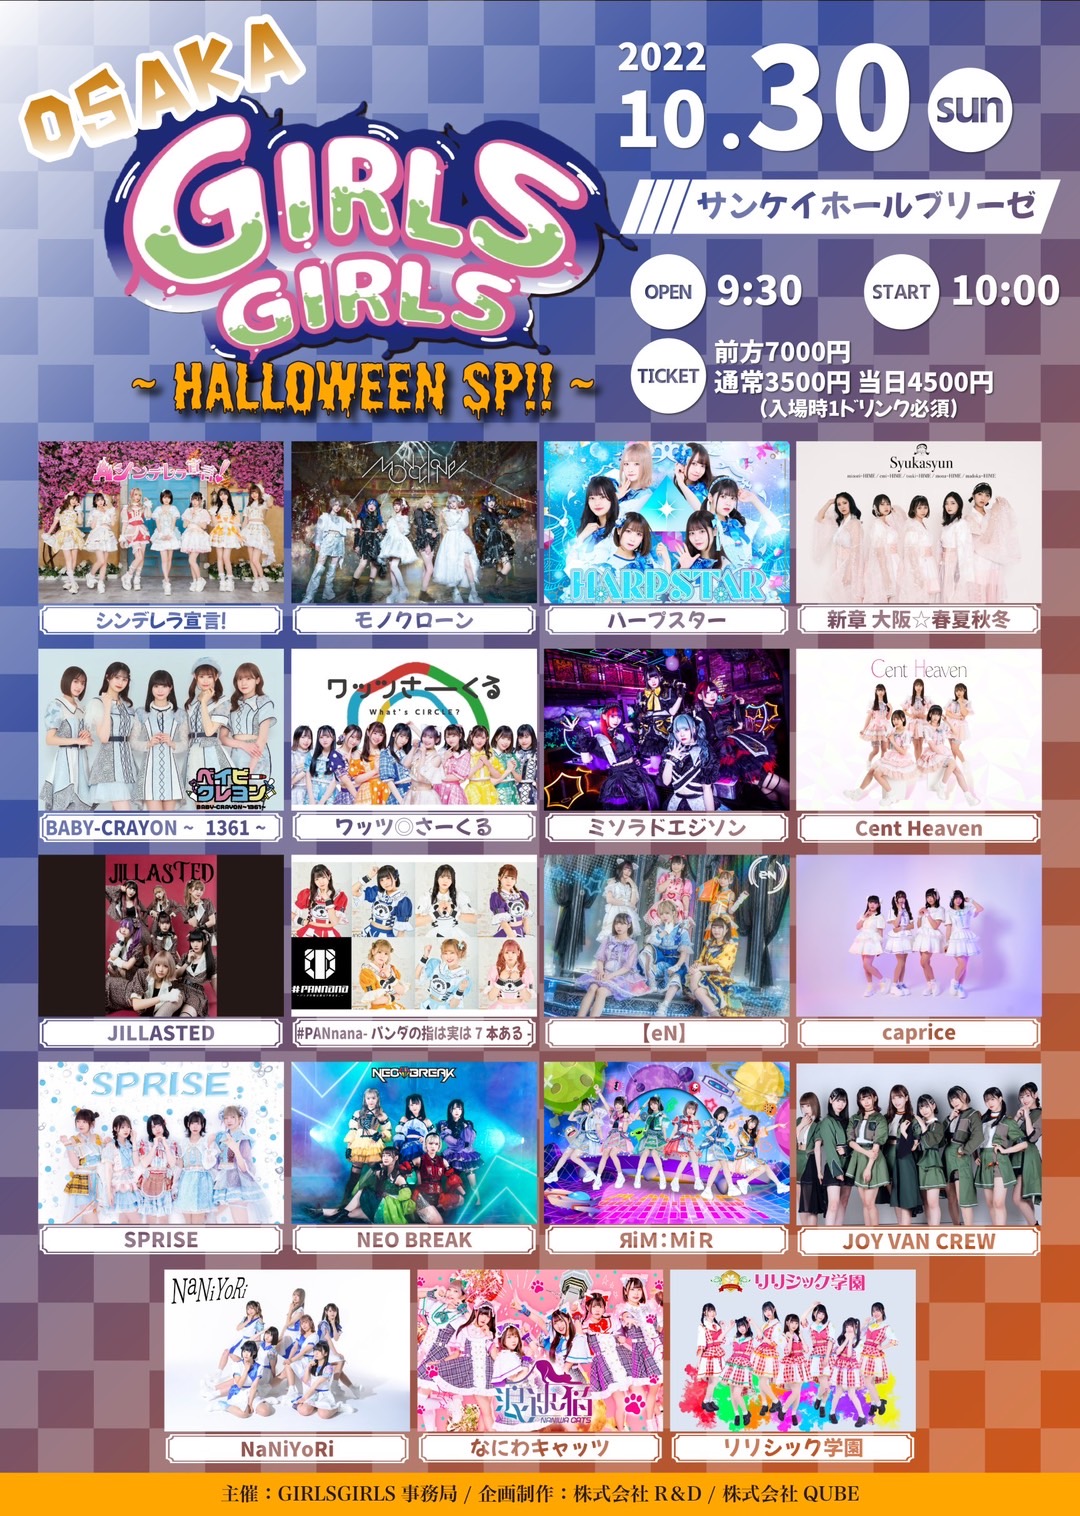 10/30(日) OSAKA GIRLS GIRLS ~ Halloween SP!! ~のチケット情報・予約 